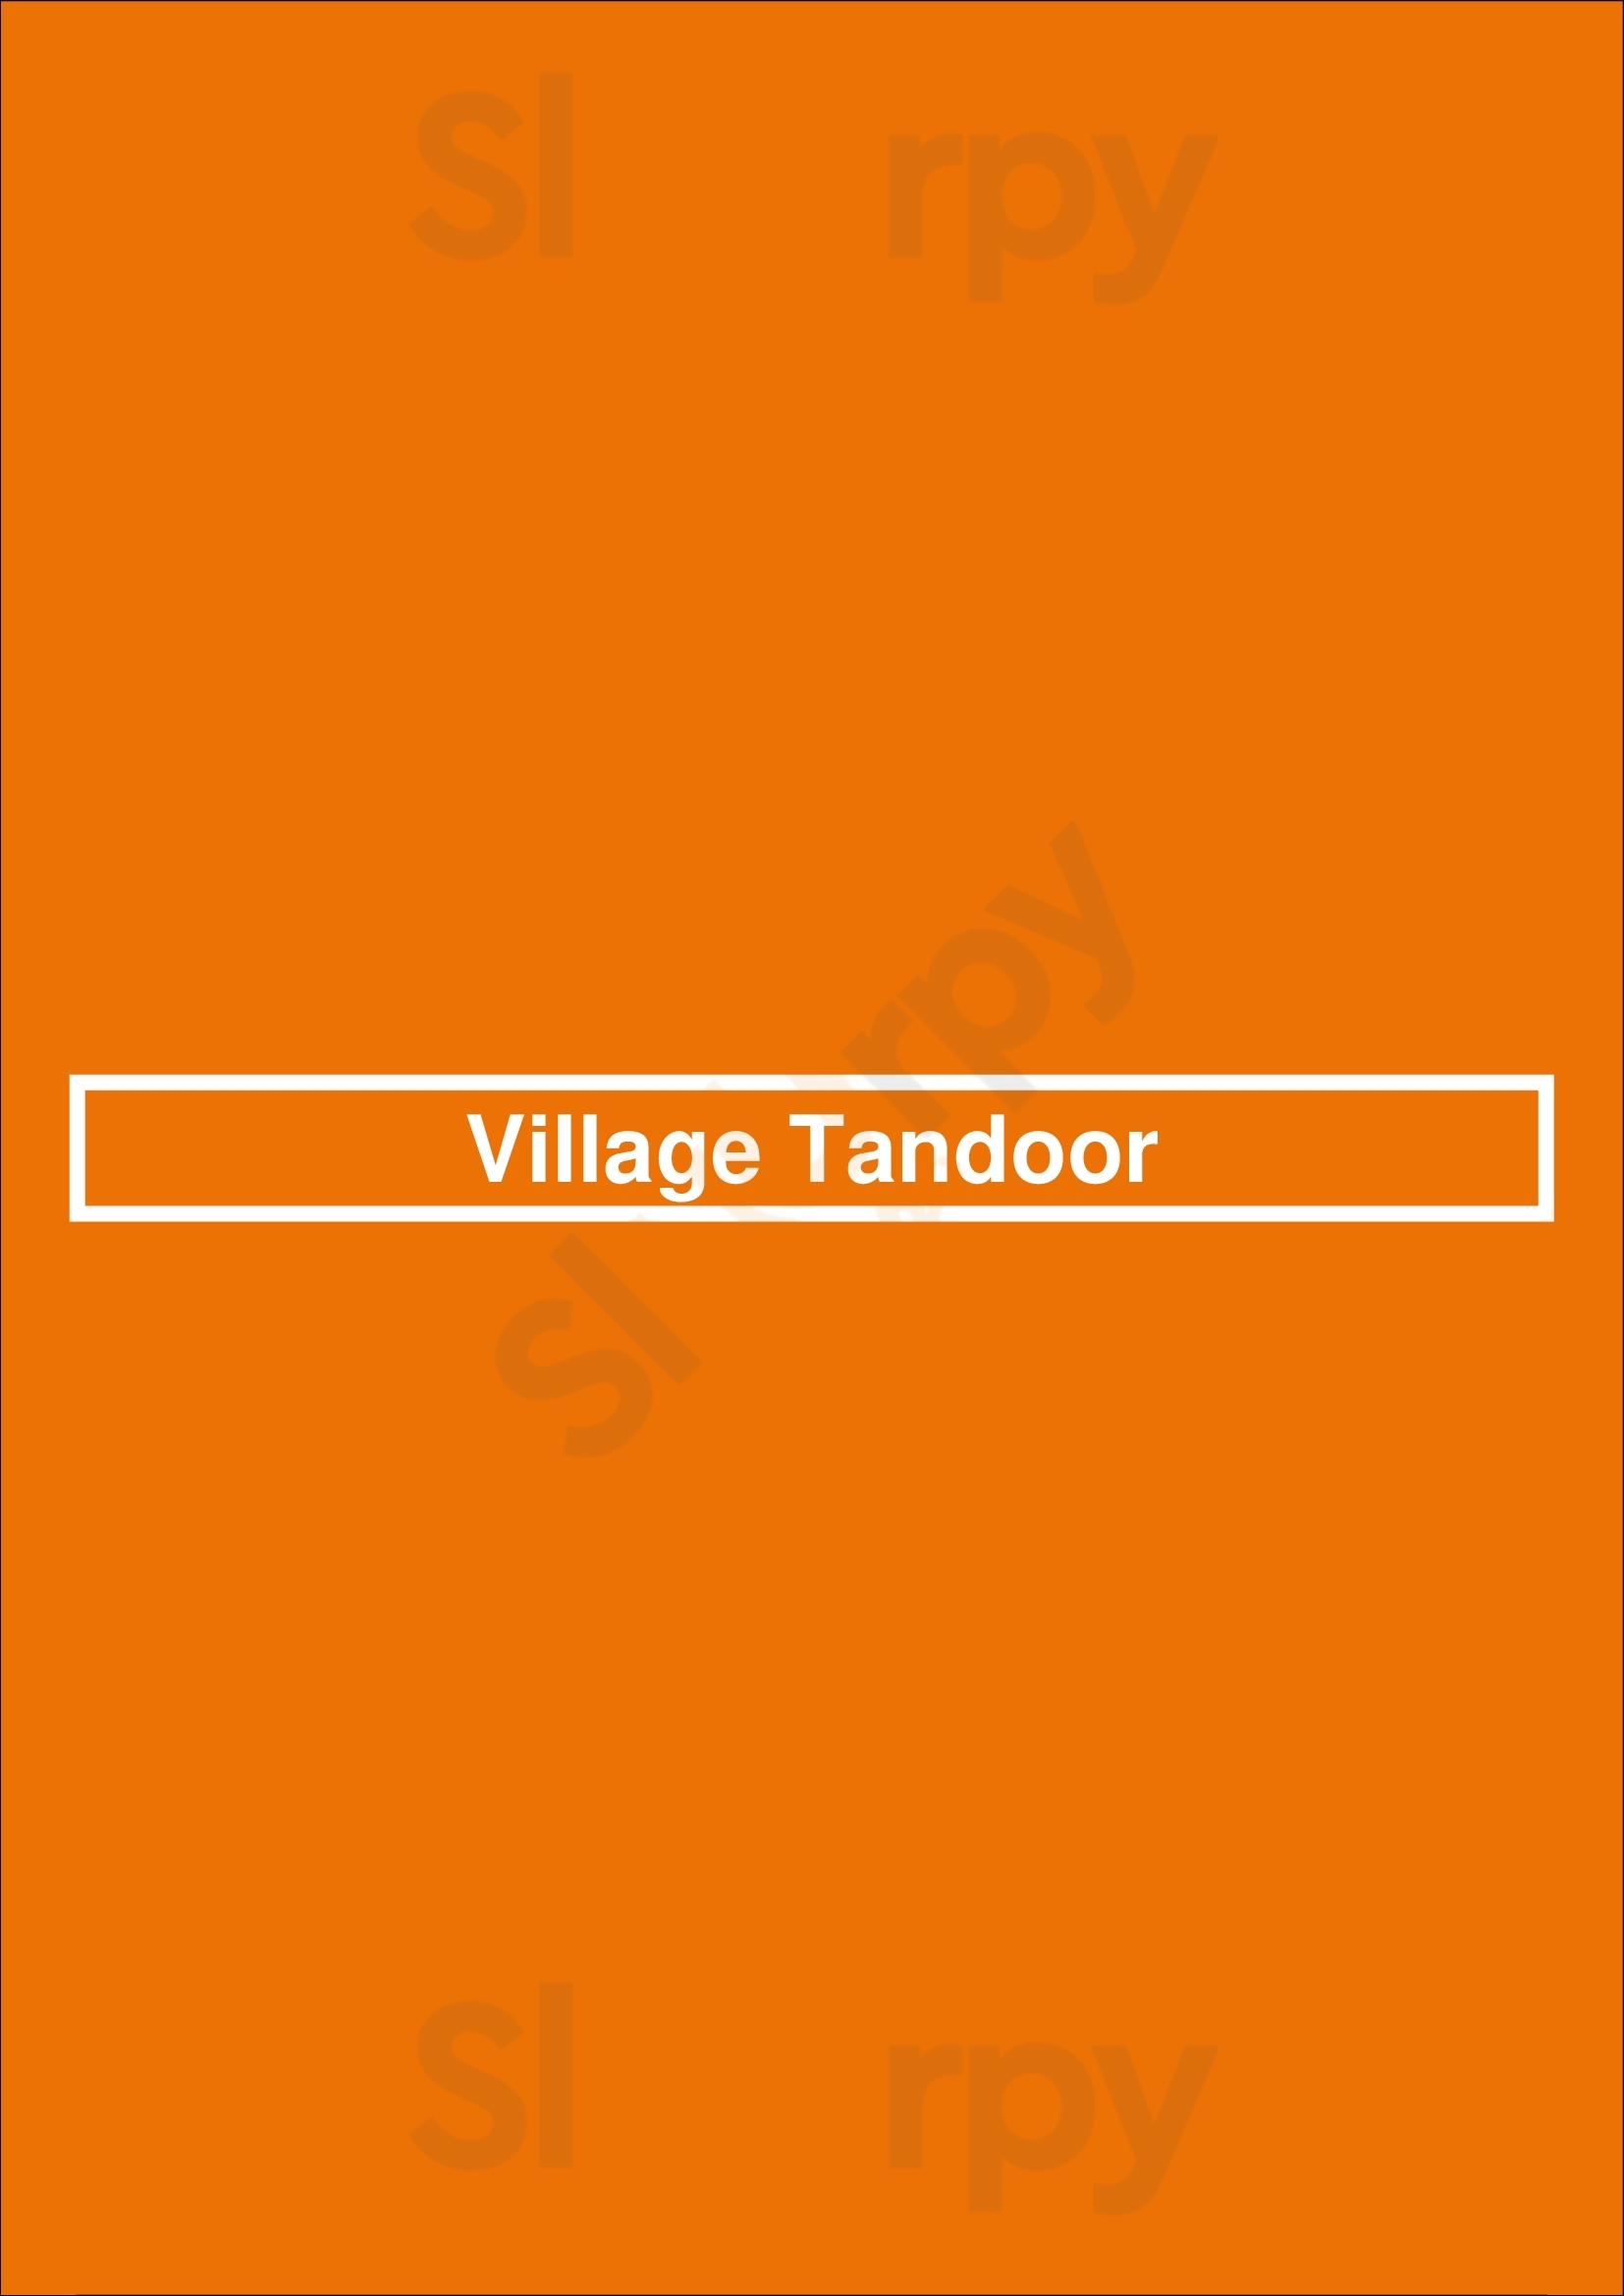 Village Tandoor Los Angeles Menu - 1